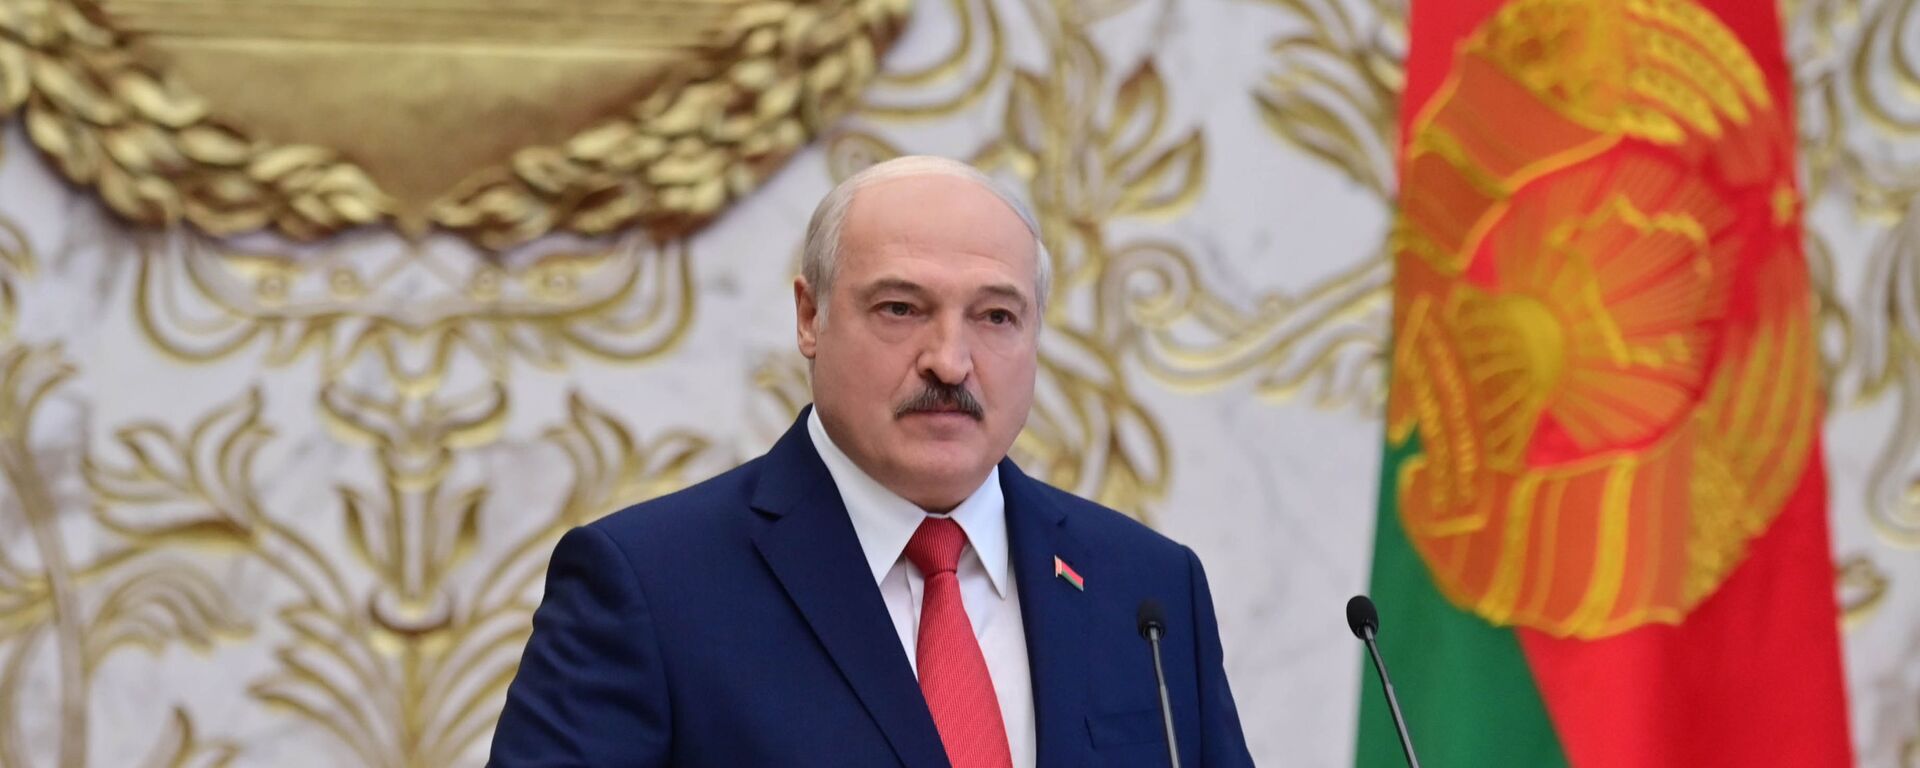 La investidura de Alexandr Lukashenko en Bielorrusia - Sputnik Mundo, 1920, 12.01.2021